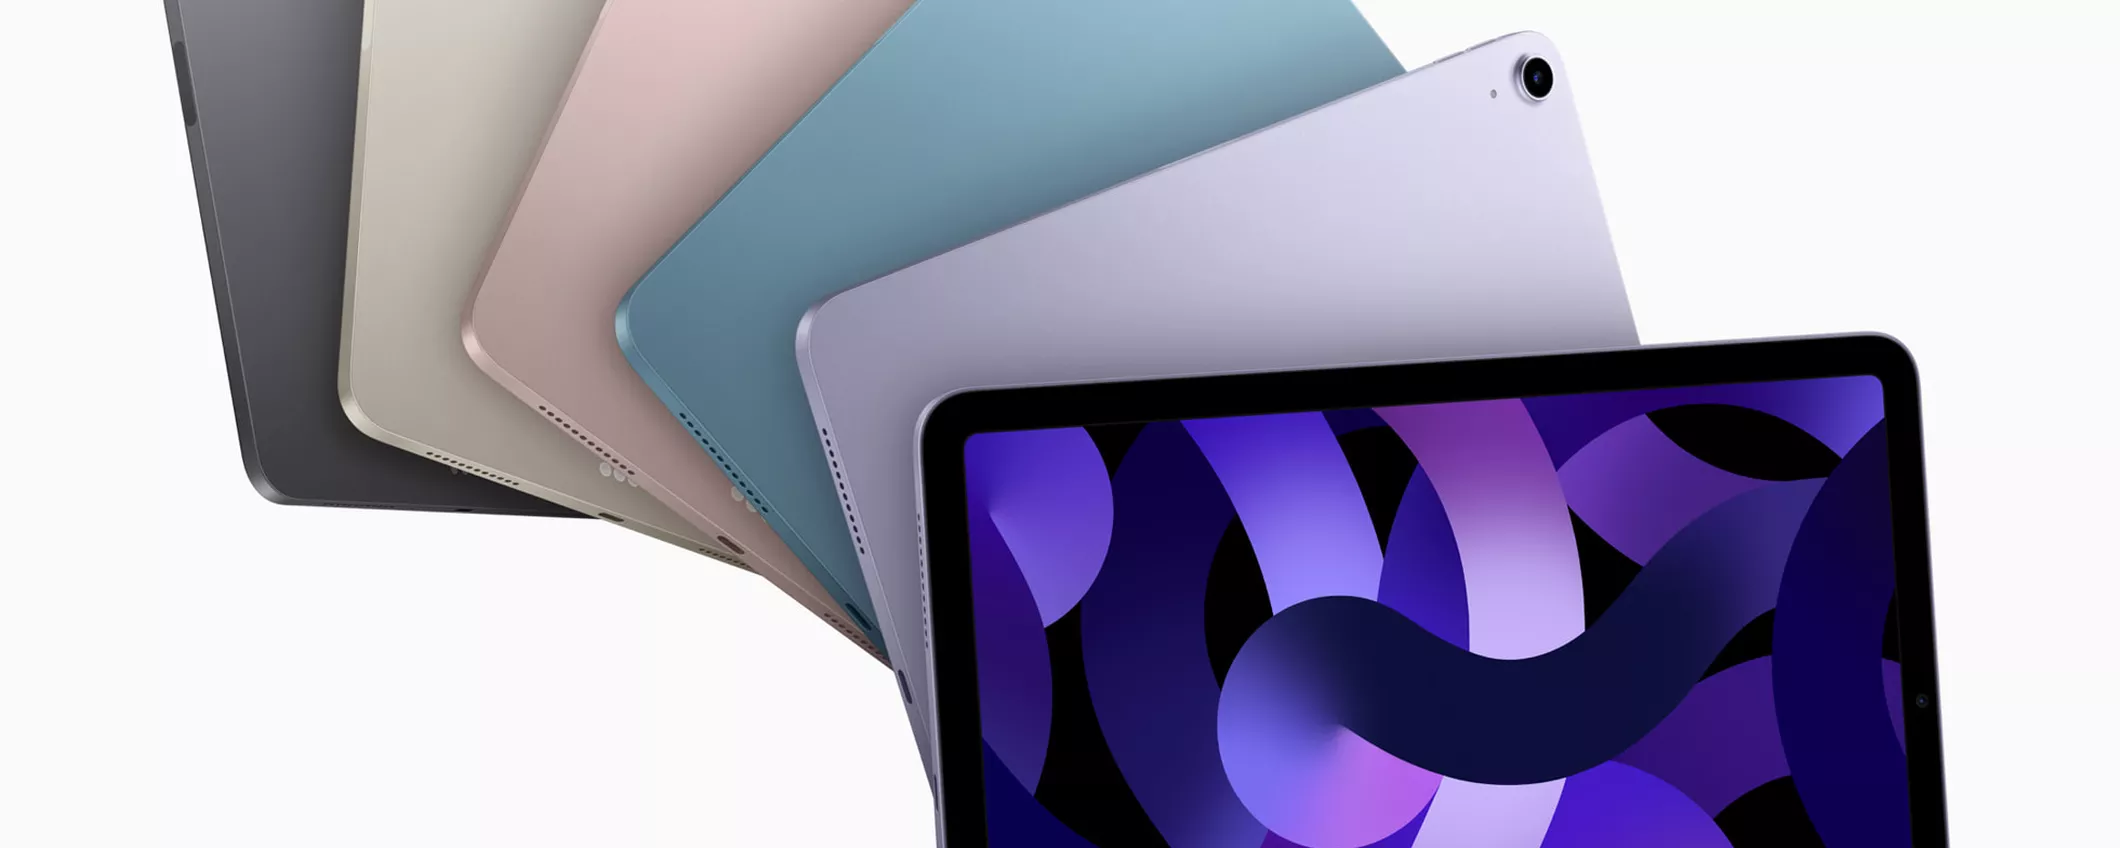 Apple lancia il nuovo iPad Air con chip M1 e 5G